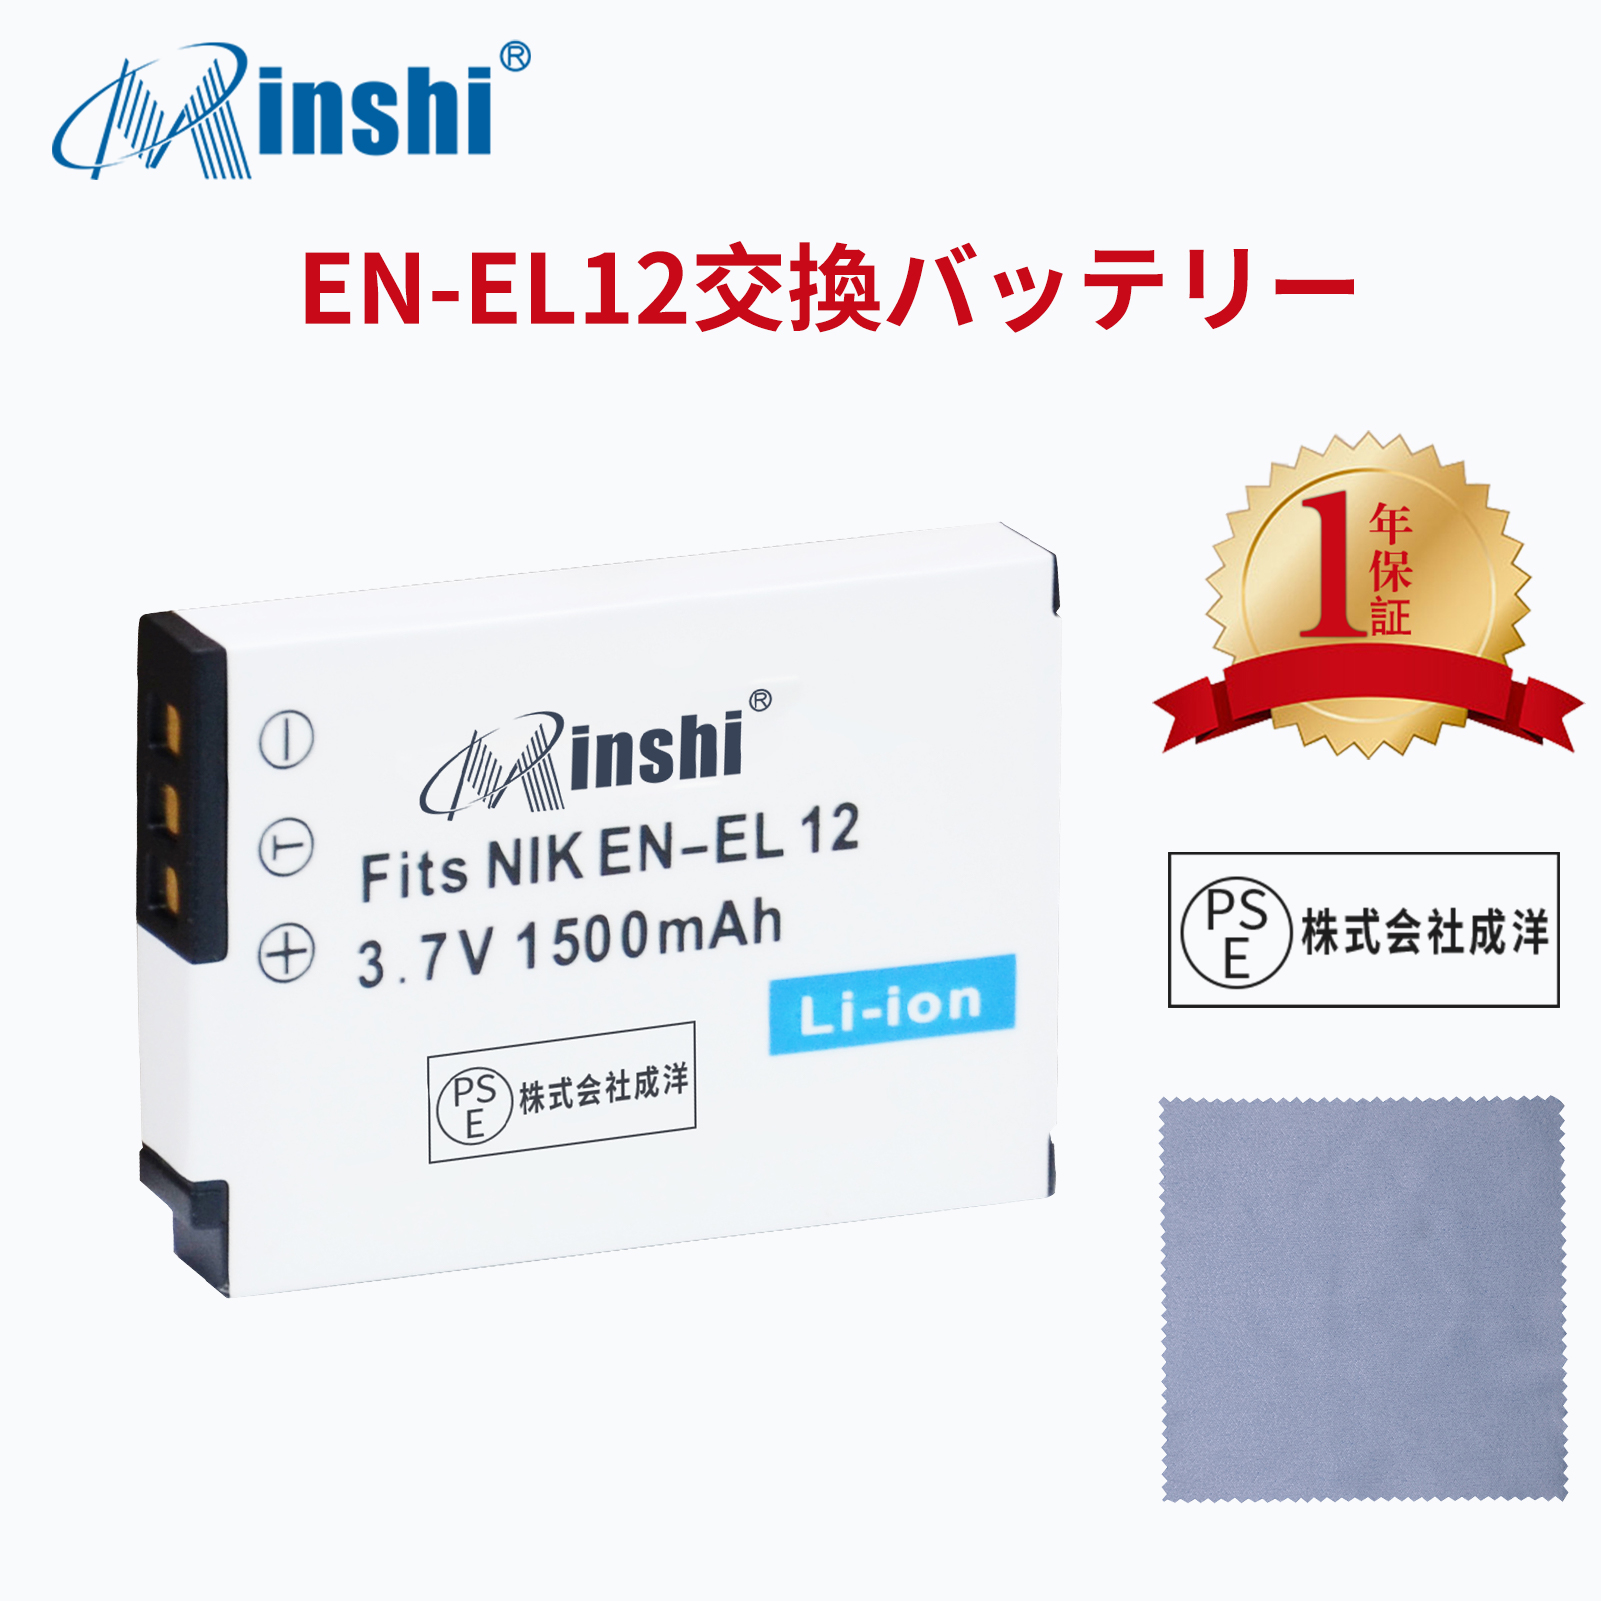 【清潔布ー付】 minshi NIKON  S1100pj   対応  1500mAh  高品質 EN-EL12 交換用バッテリー